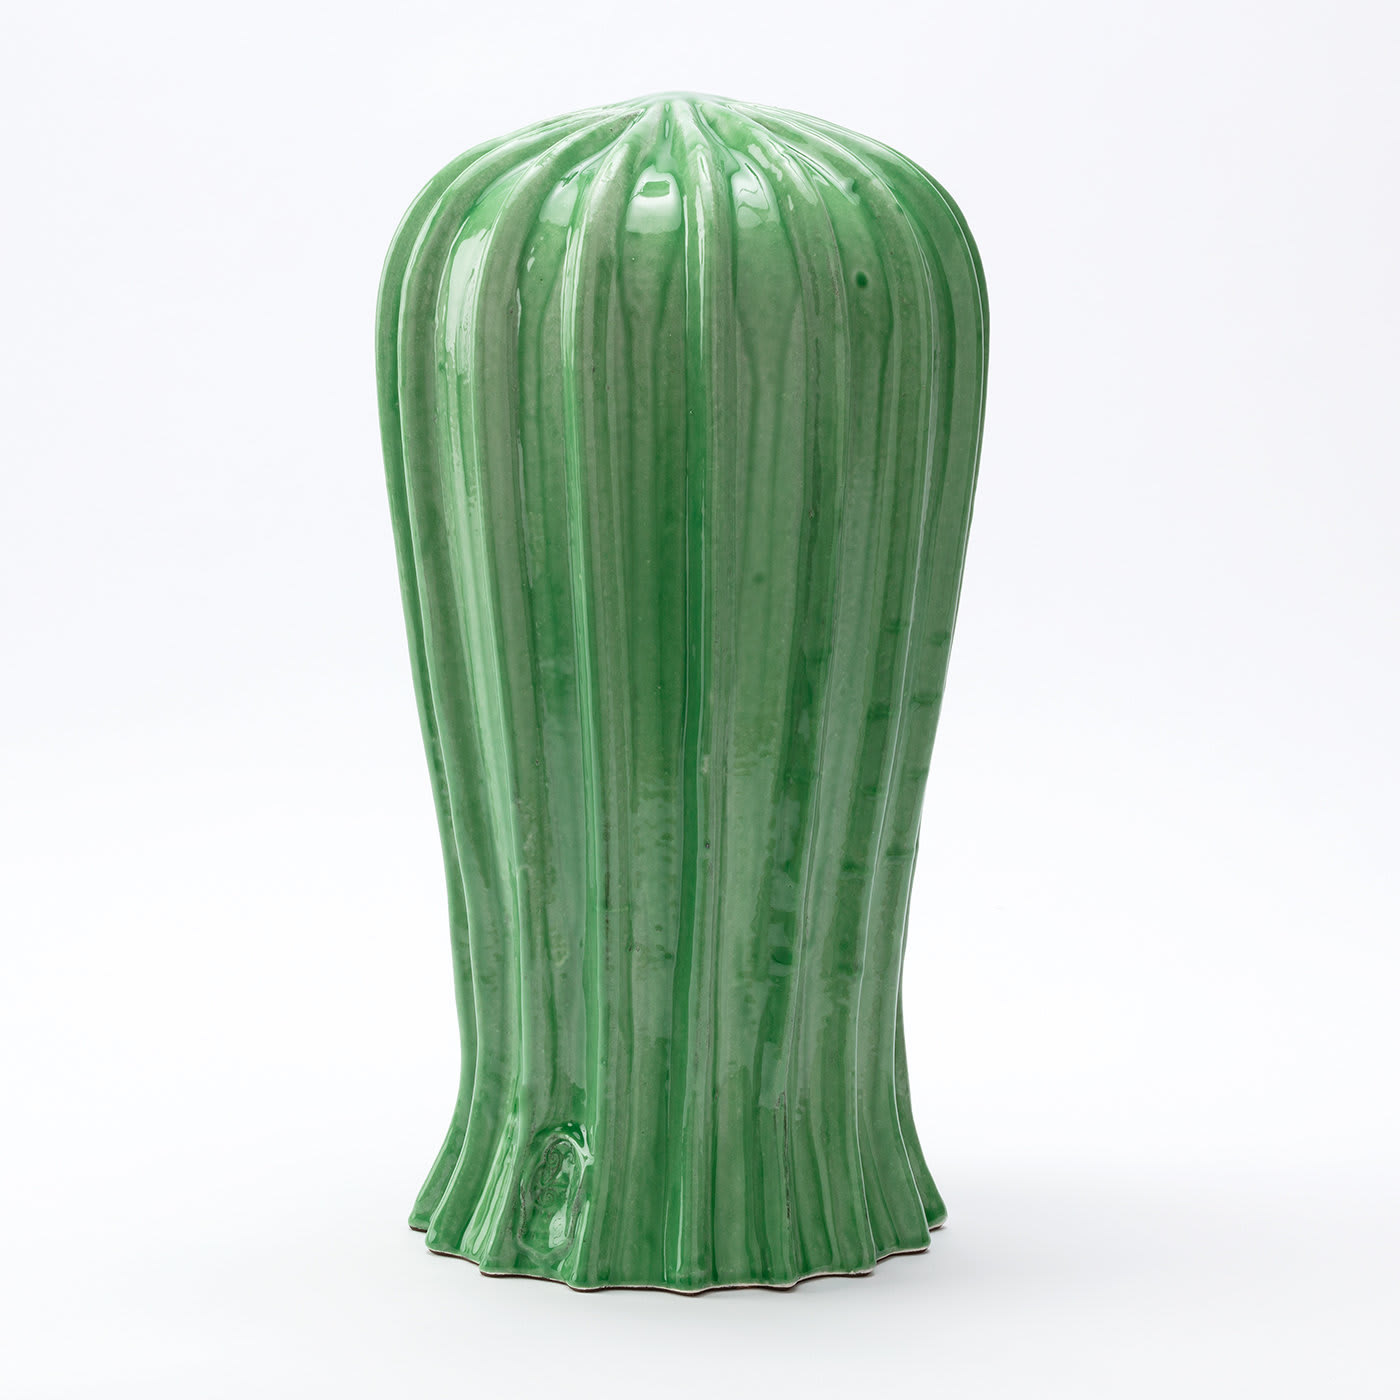 Cactus Tall Green Sculpture - Cerasarda